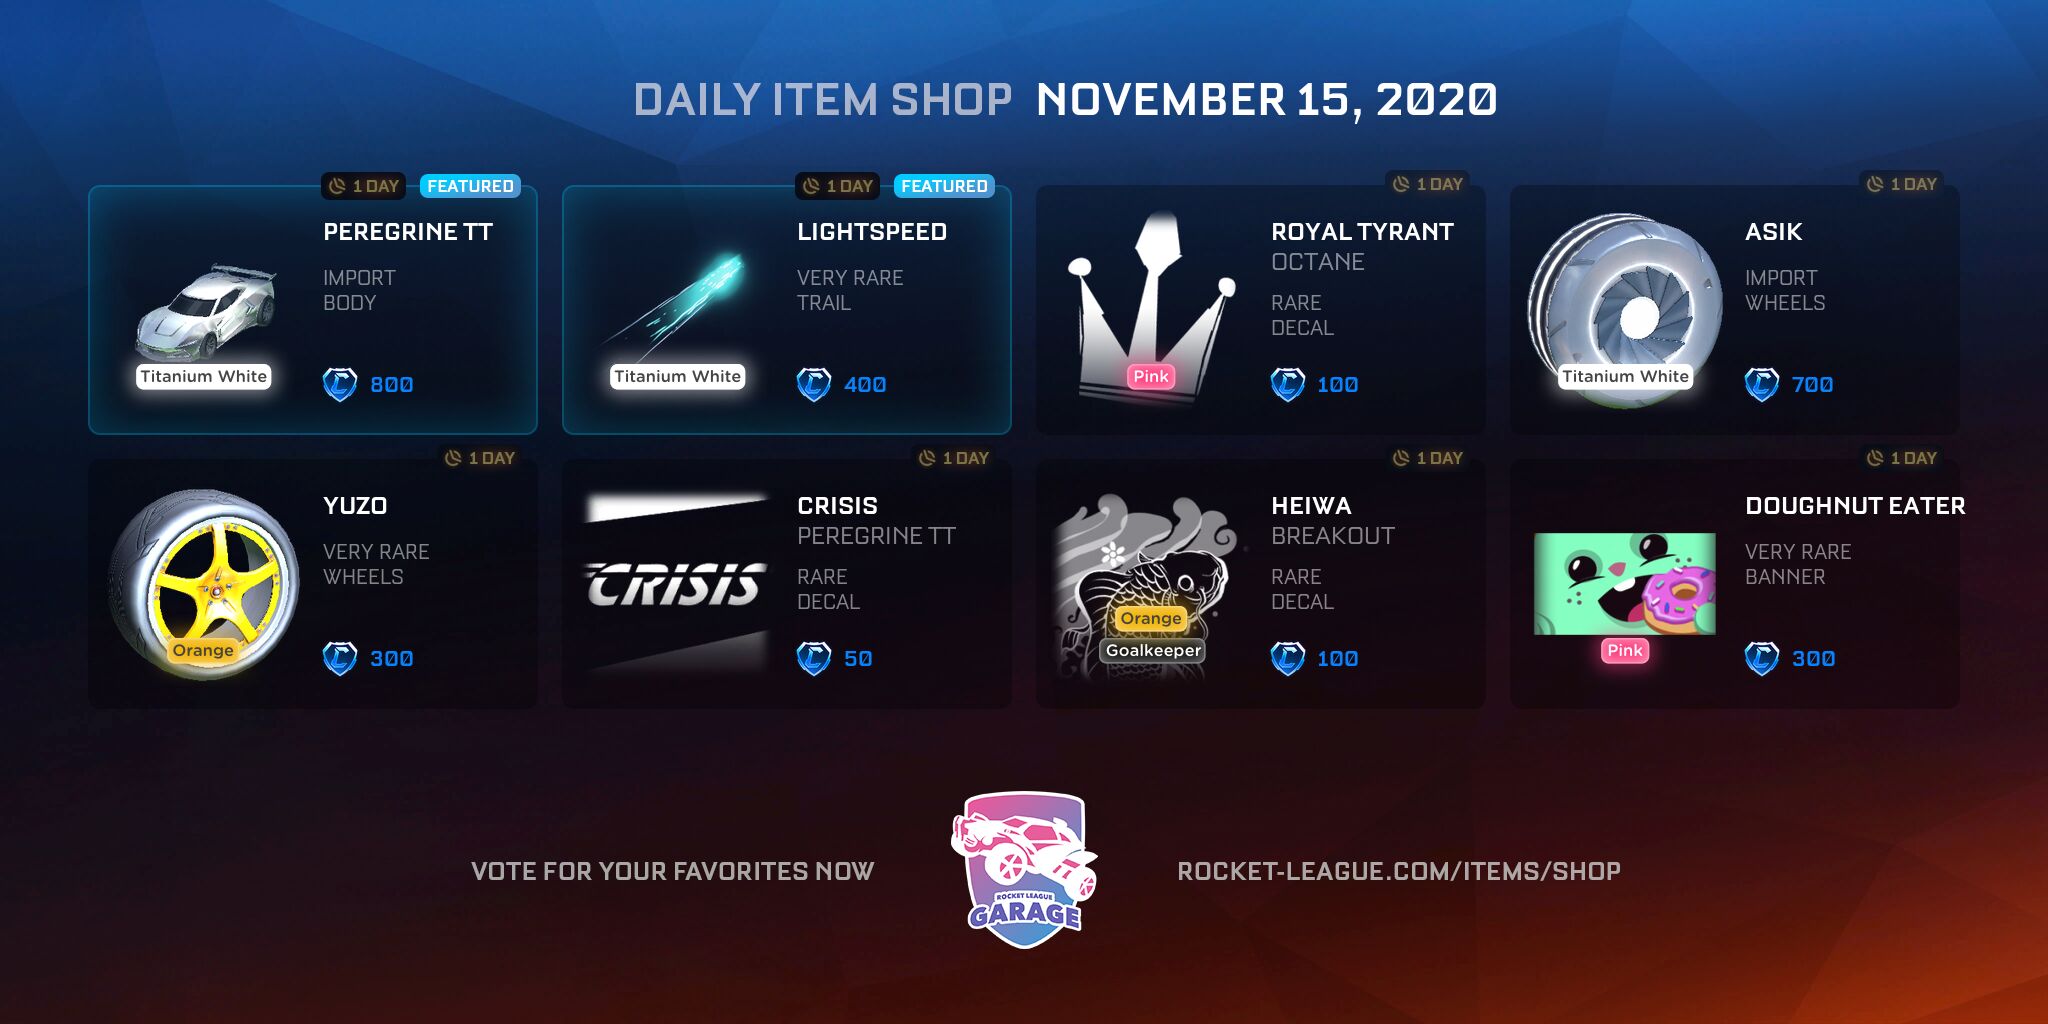 Item shop on November 15, 2020 | Rocket League Garage